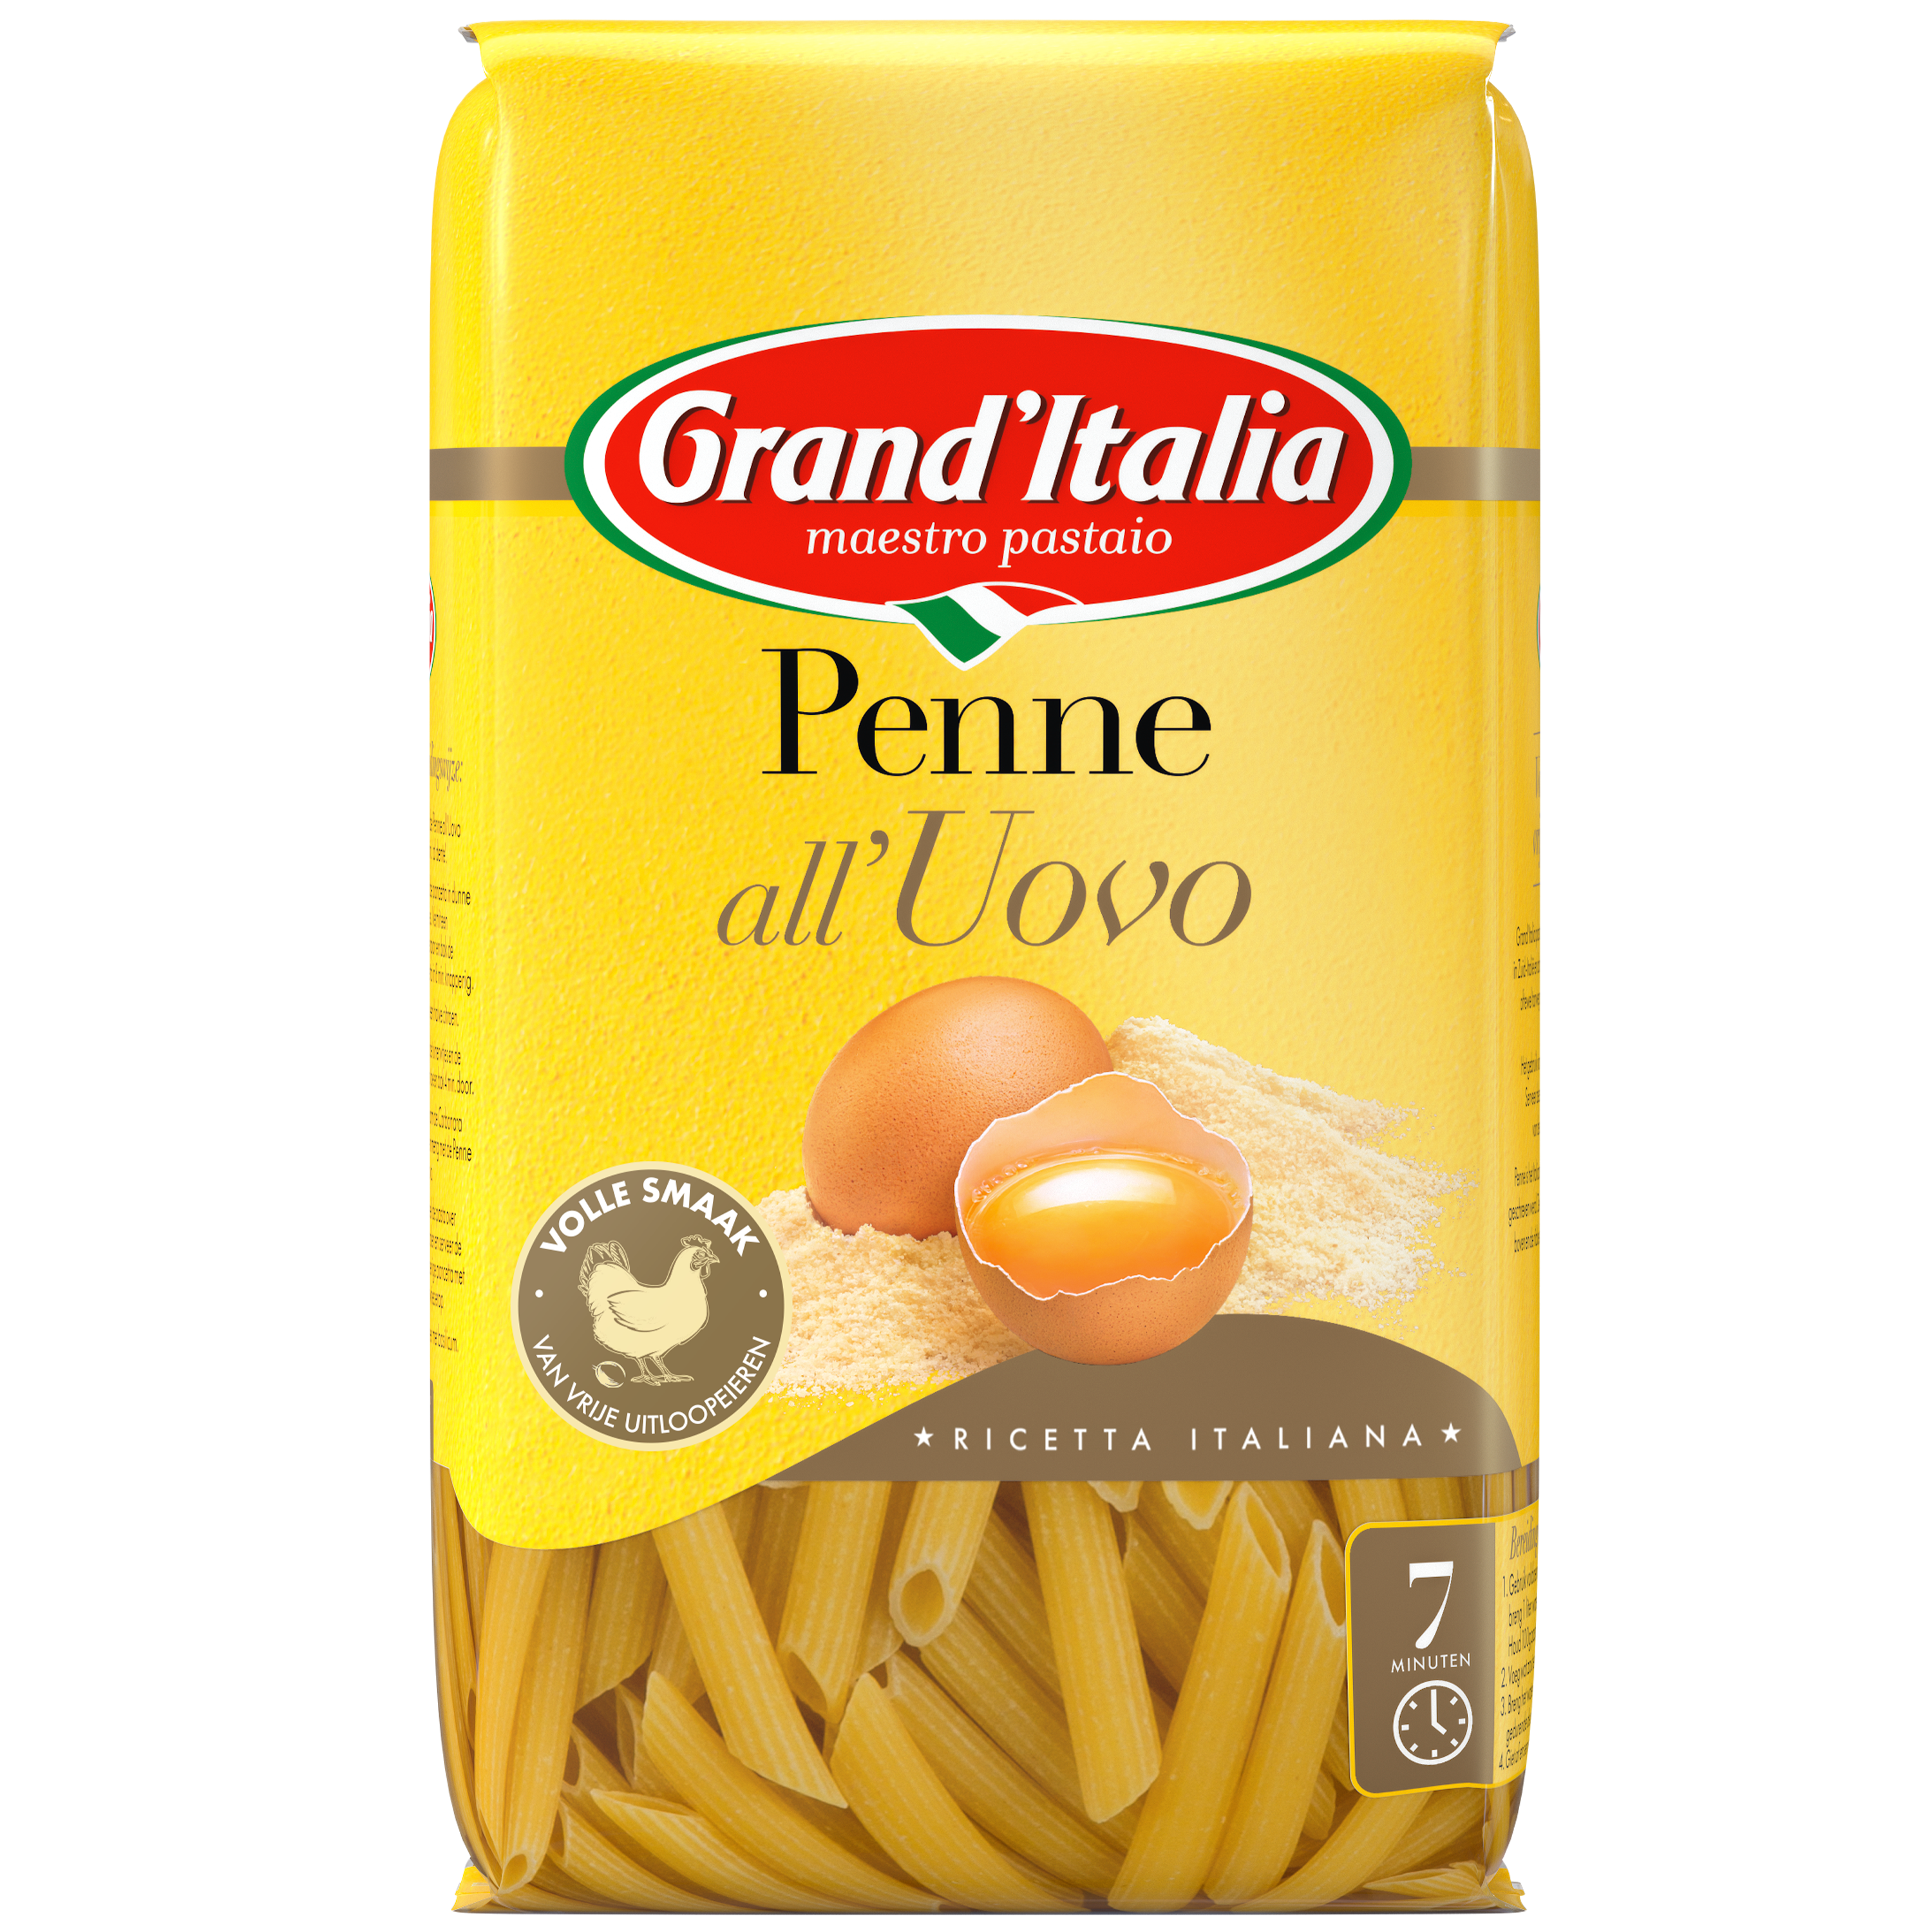 Pasta Penne all'Uovo 500g Grand'Italia